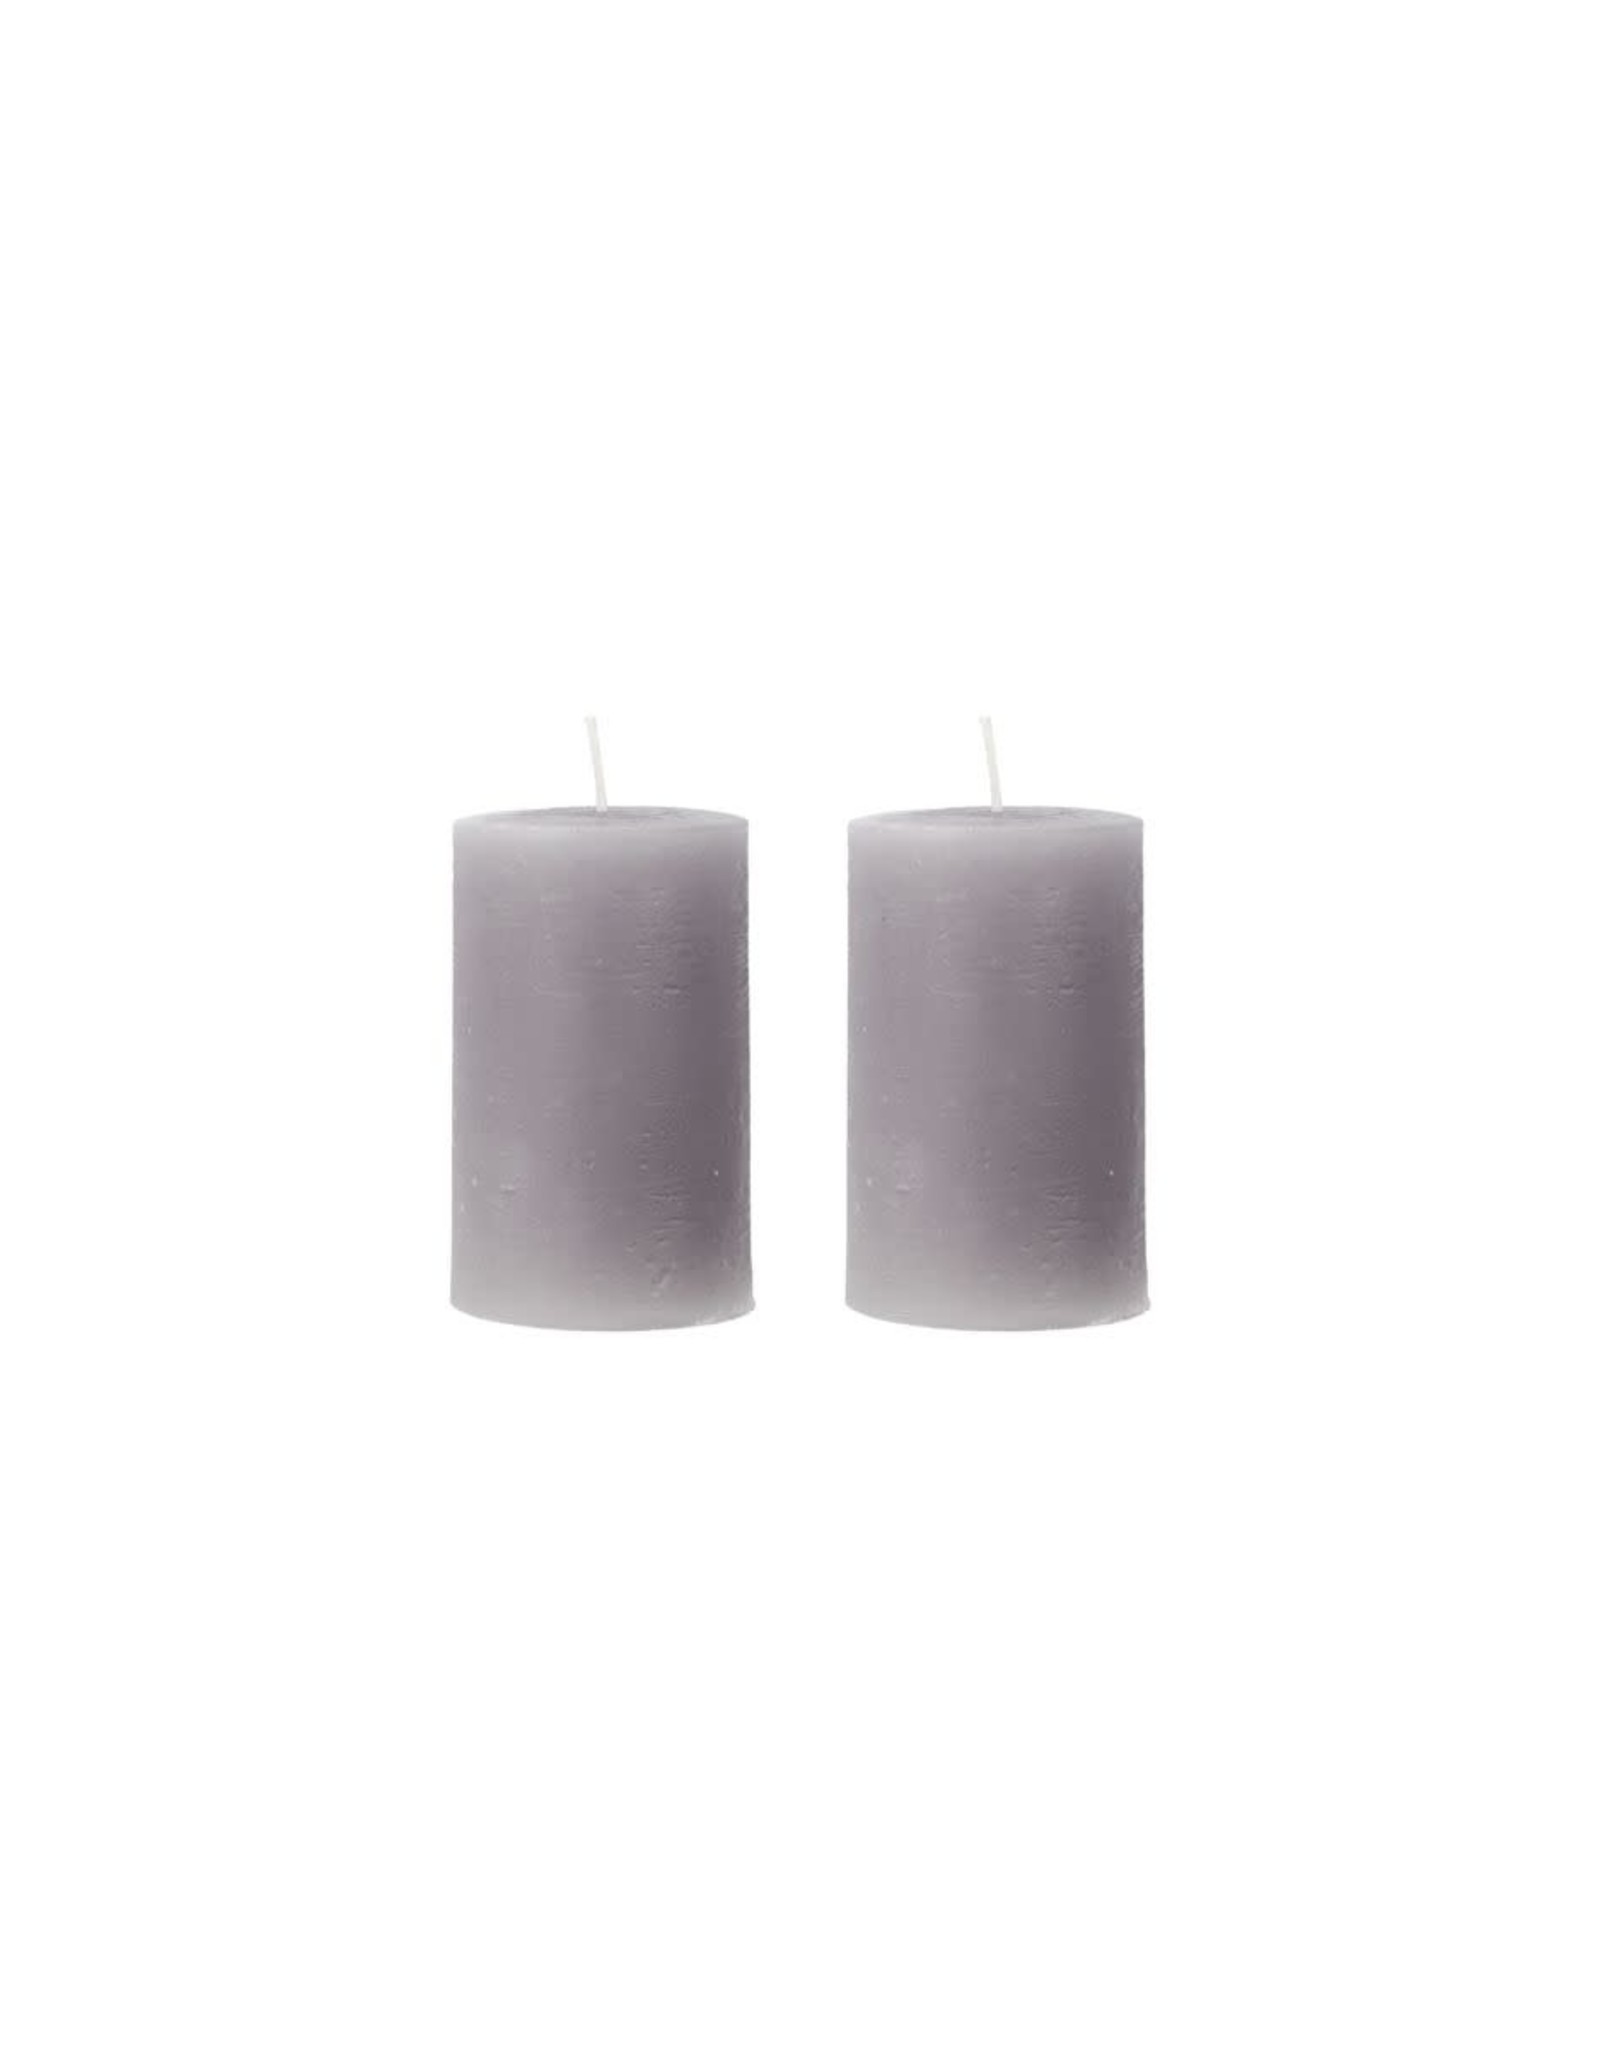 House Doctor Pillar candle set of 2pcs.-grey